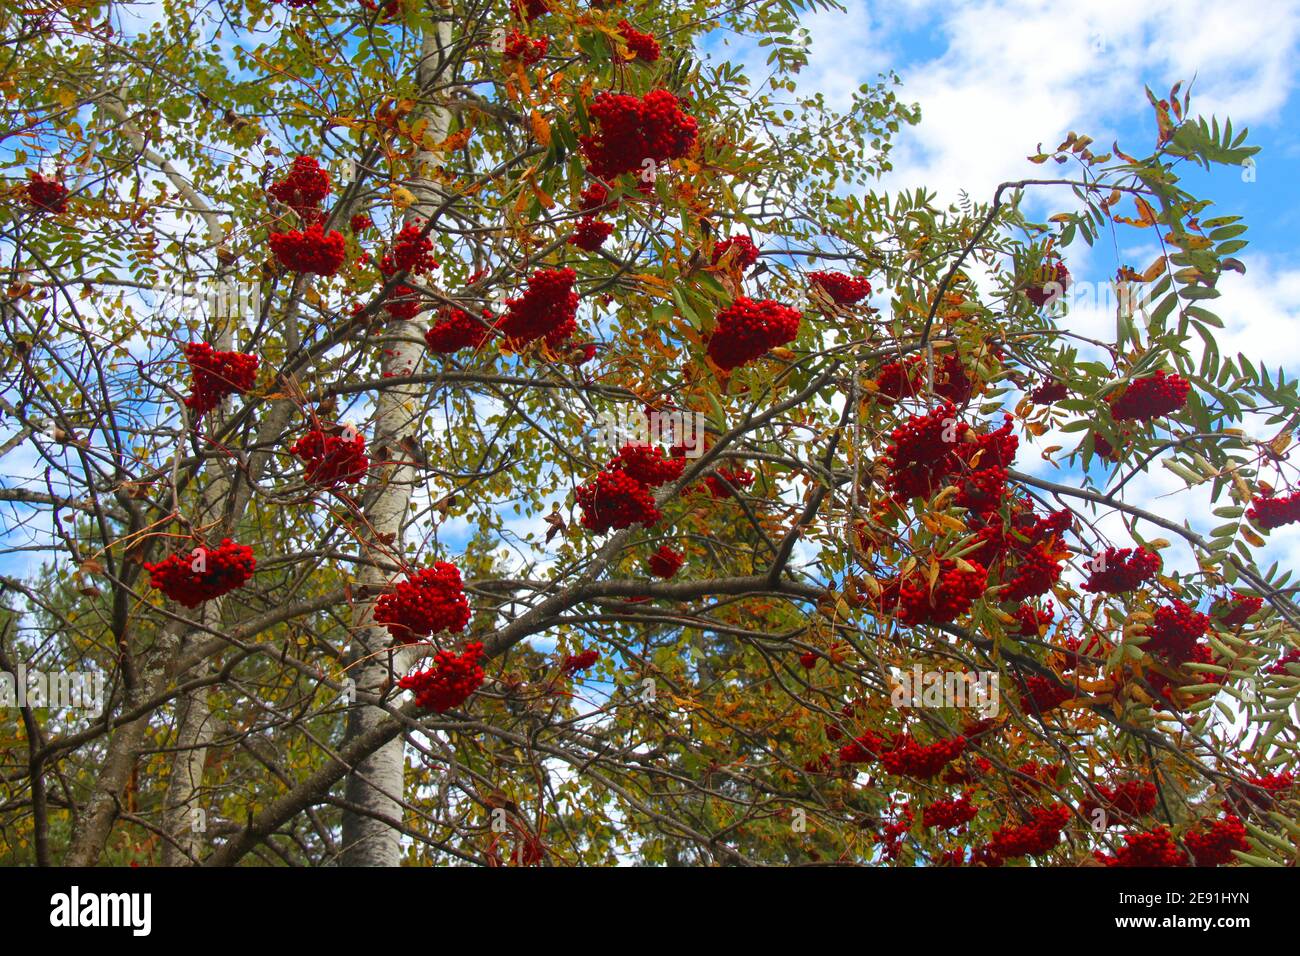 Hojas de color otoño y bayas rojas brillantes en un árbol de fresno de montaña se ven contra un cielo azul con nubes blancas y esponjosas en otoño. Foto de stock